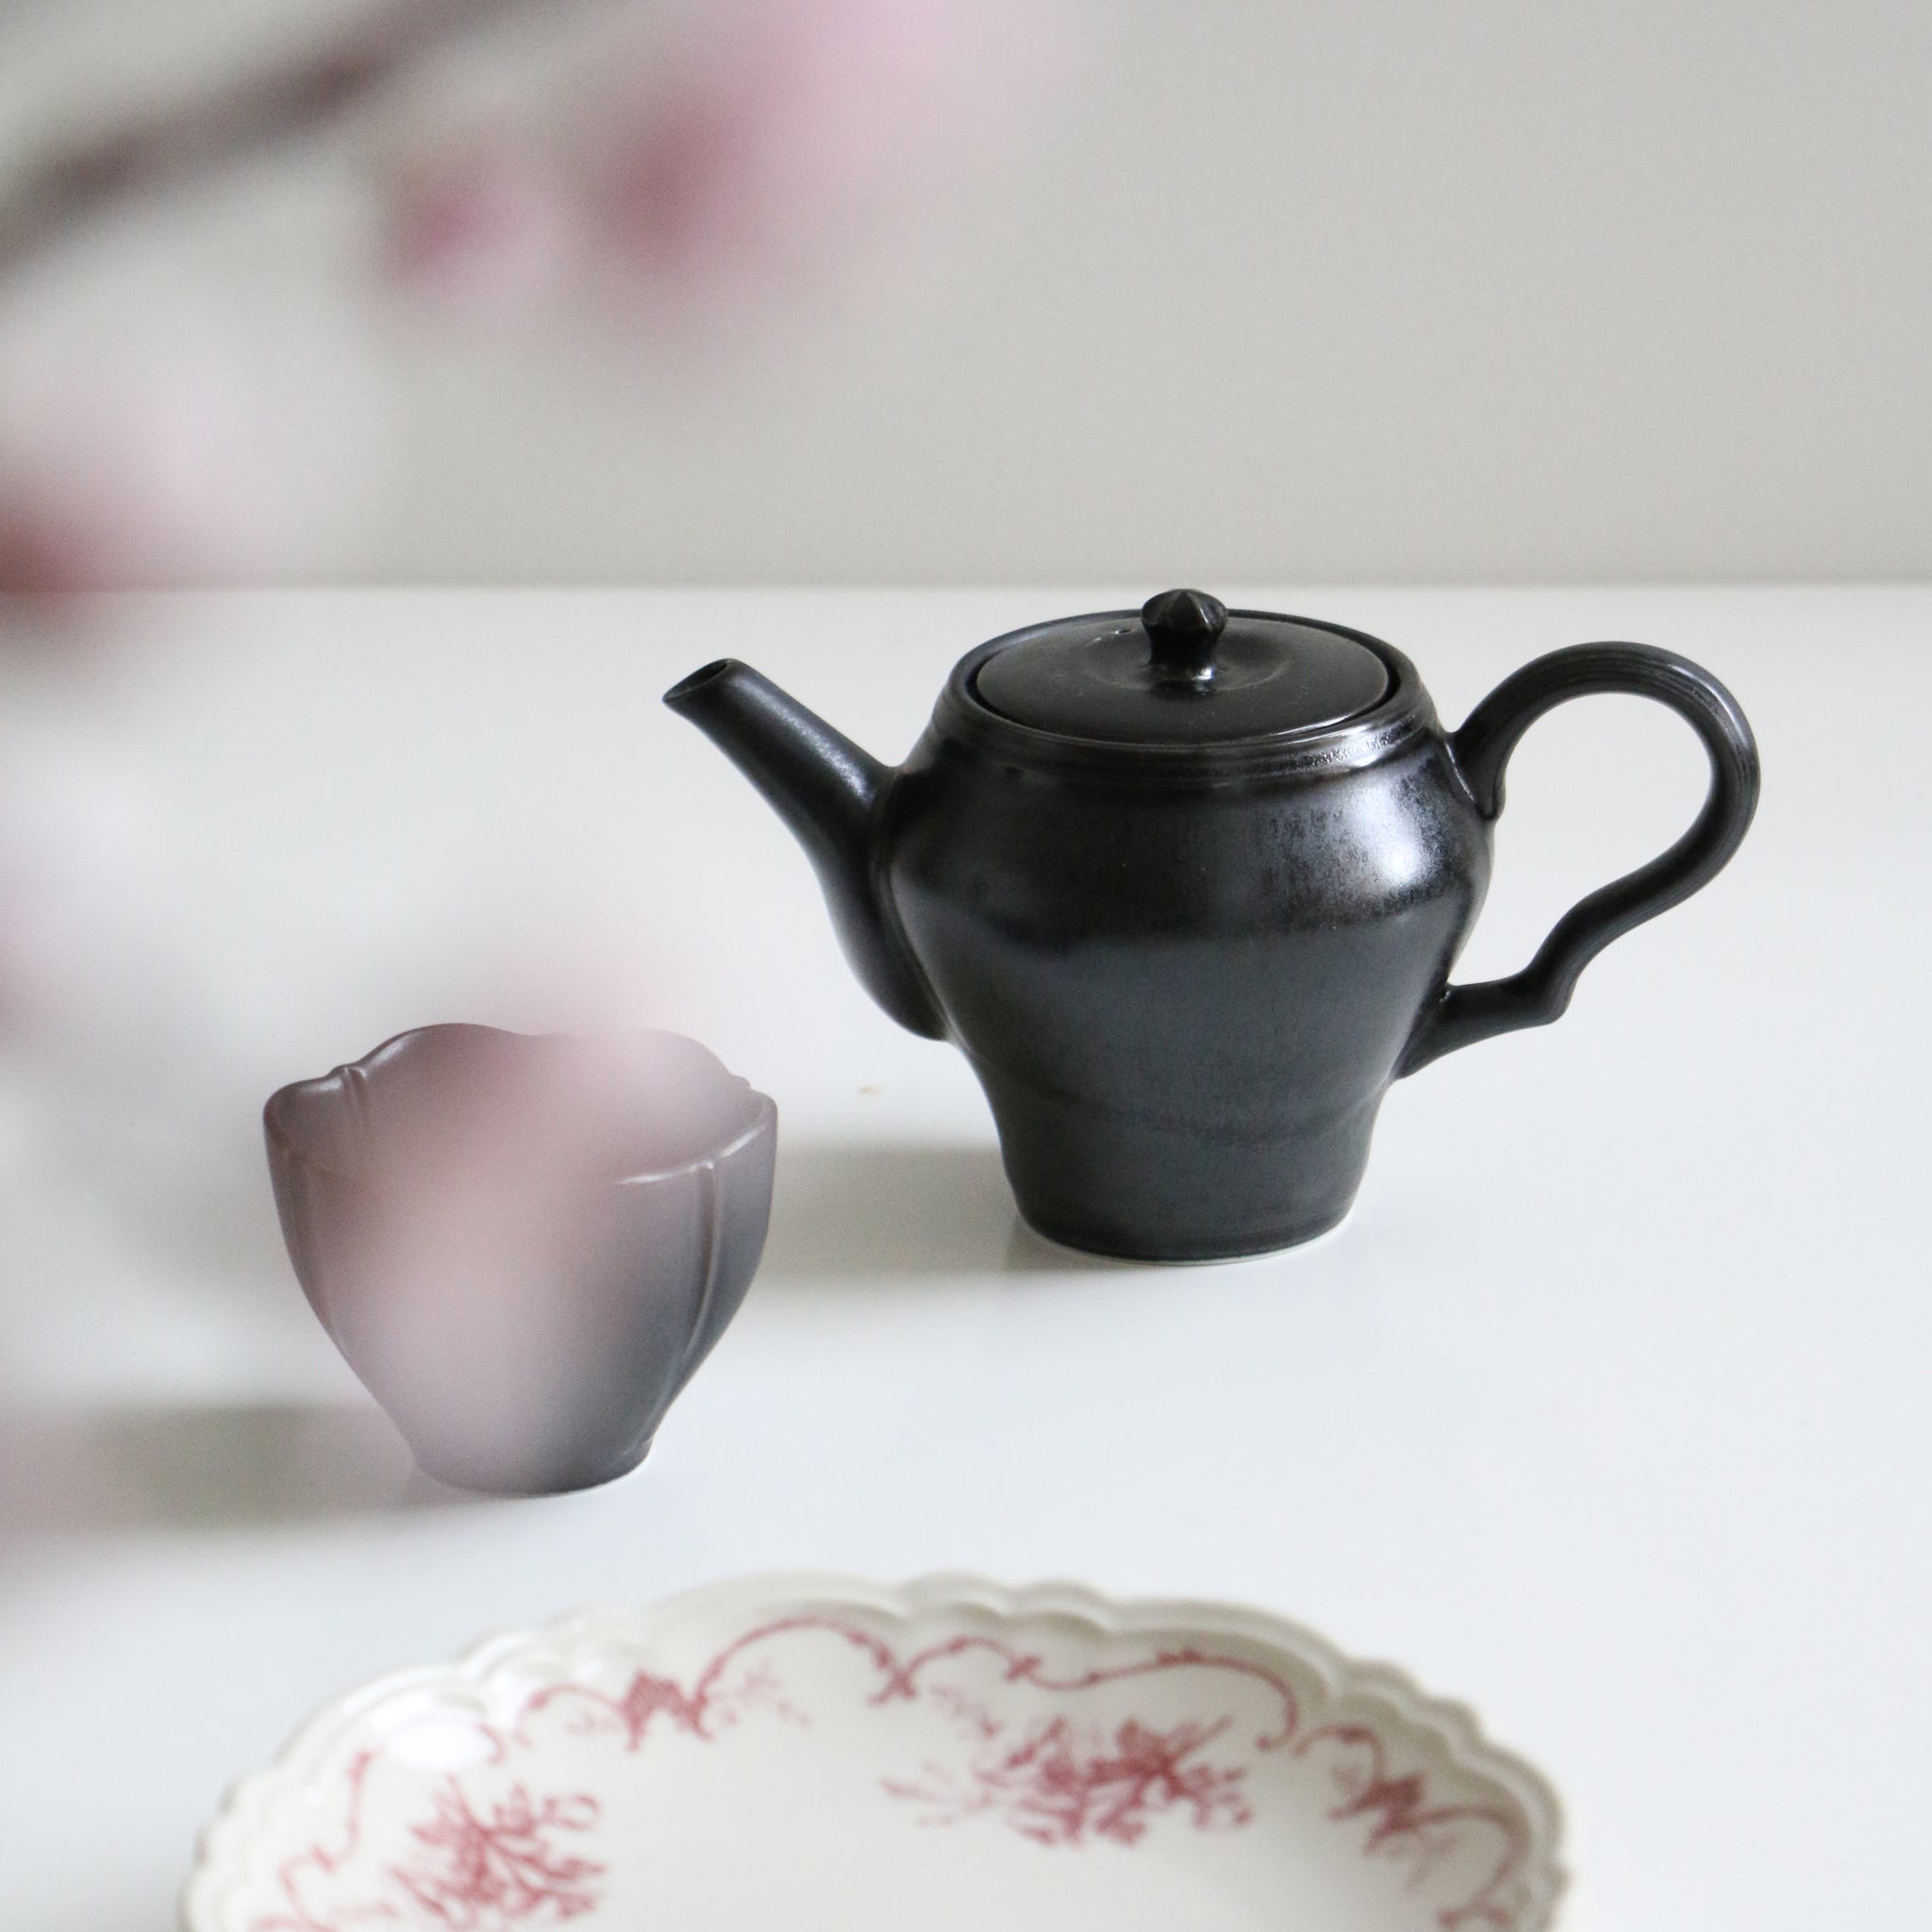 Jasmin Teapot and Cup